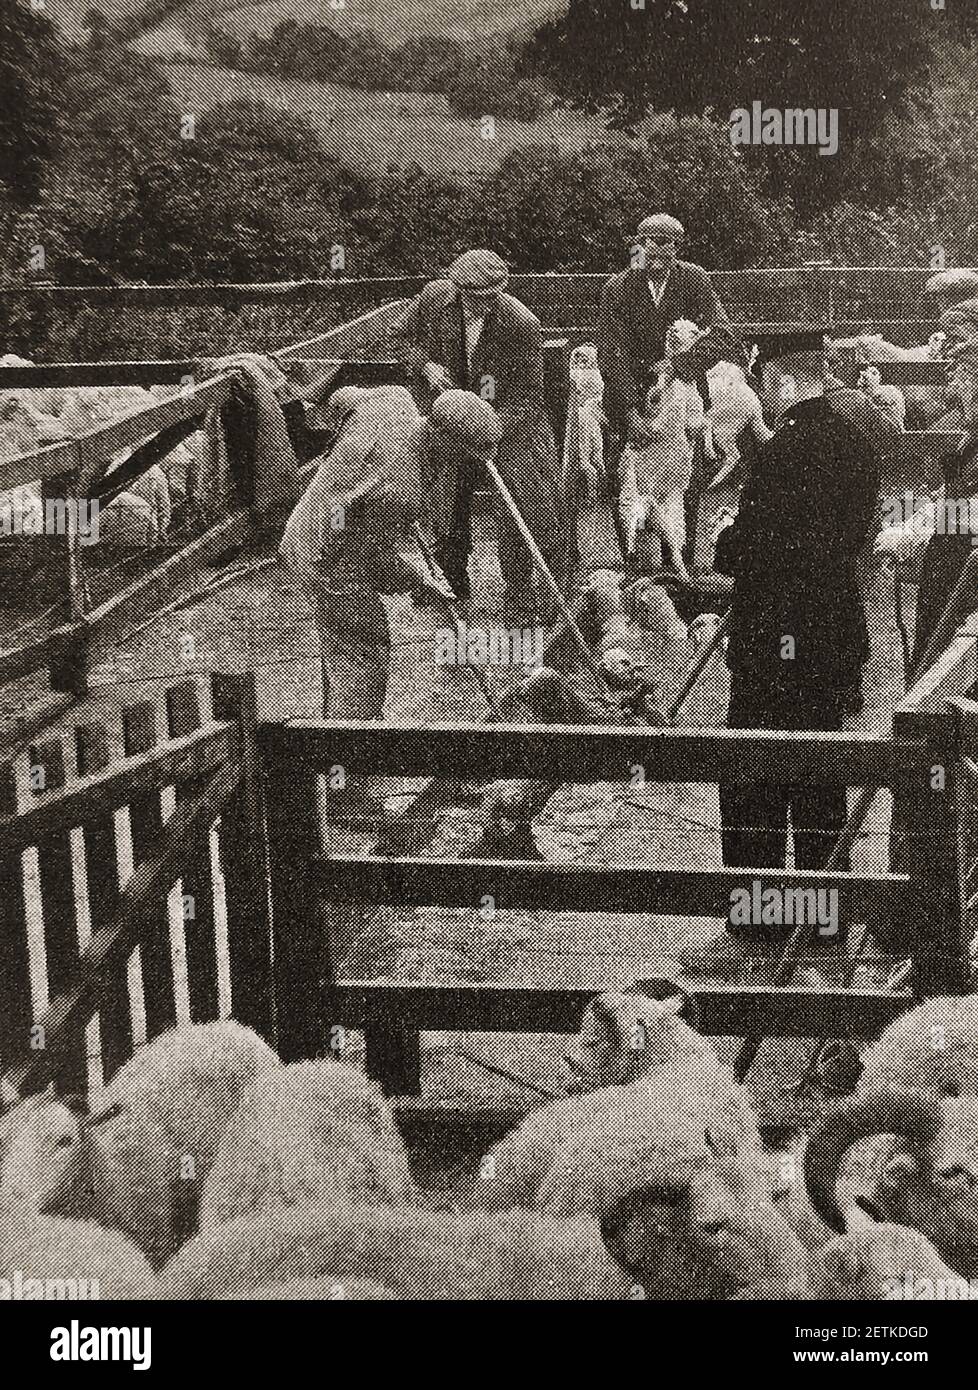 Une ancienne photo de presse montrant des moutons qui plonissent au pays de Galles pendant une épidémie de fièvre aphteuse, sous la supervision d'un policier. Banque D'Images